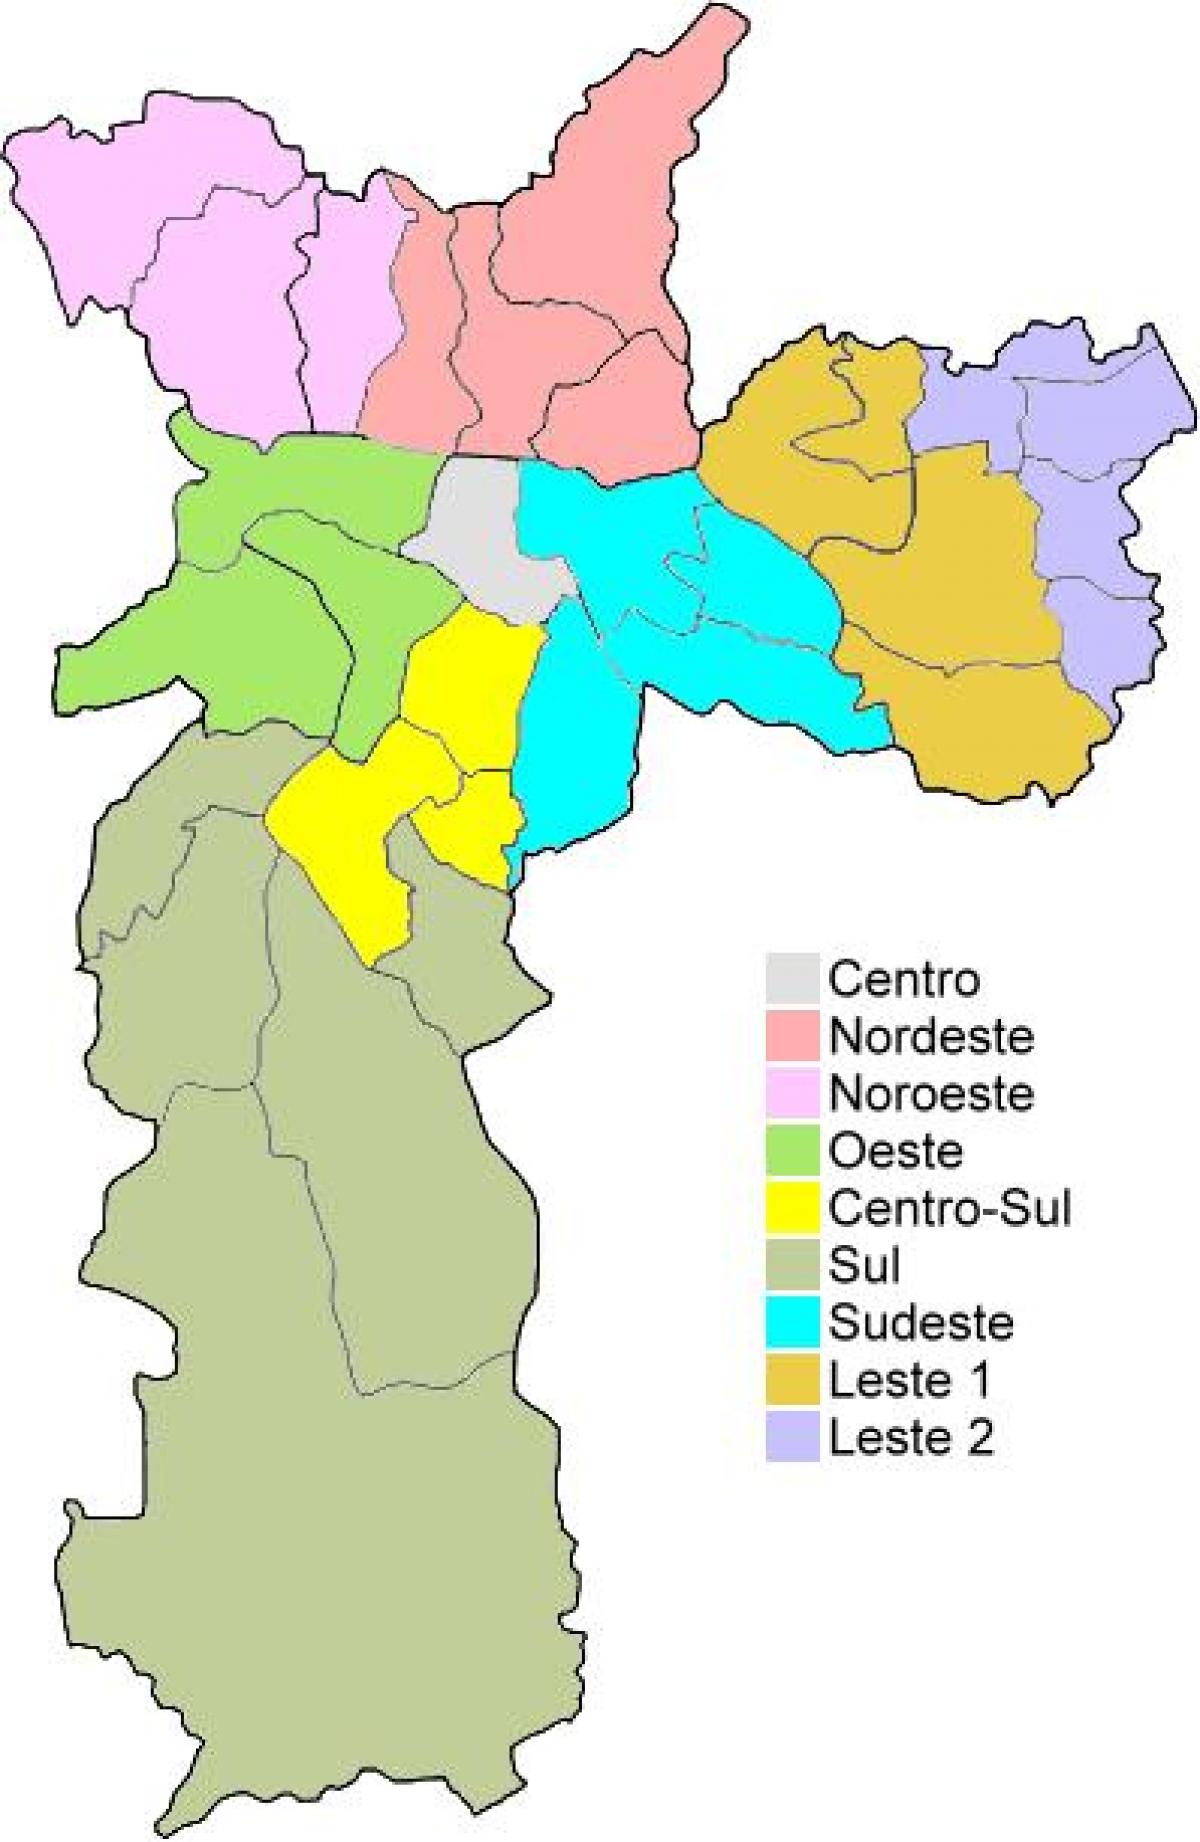 नक्शे के प्रशासनिक क्षेत्रों में साओ पाउलो